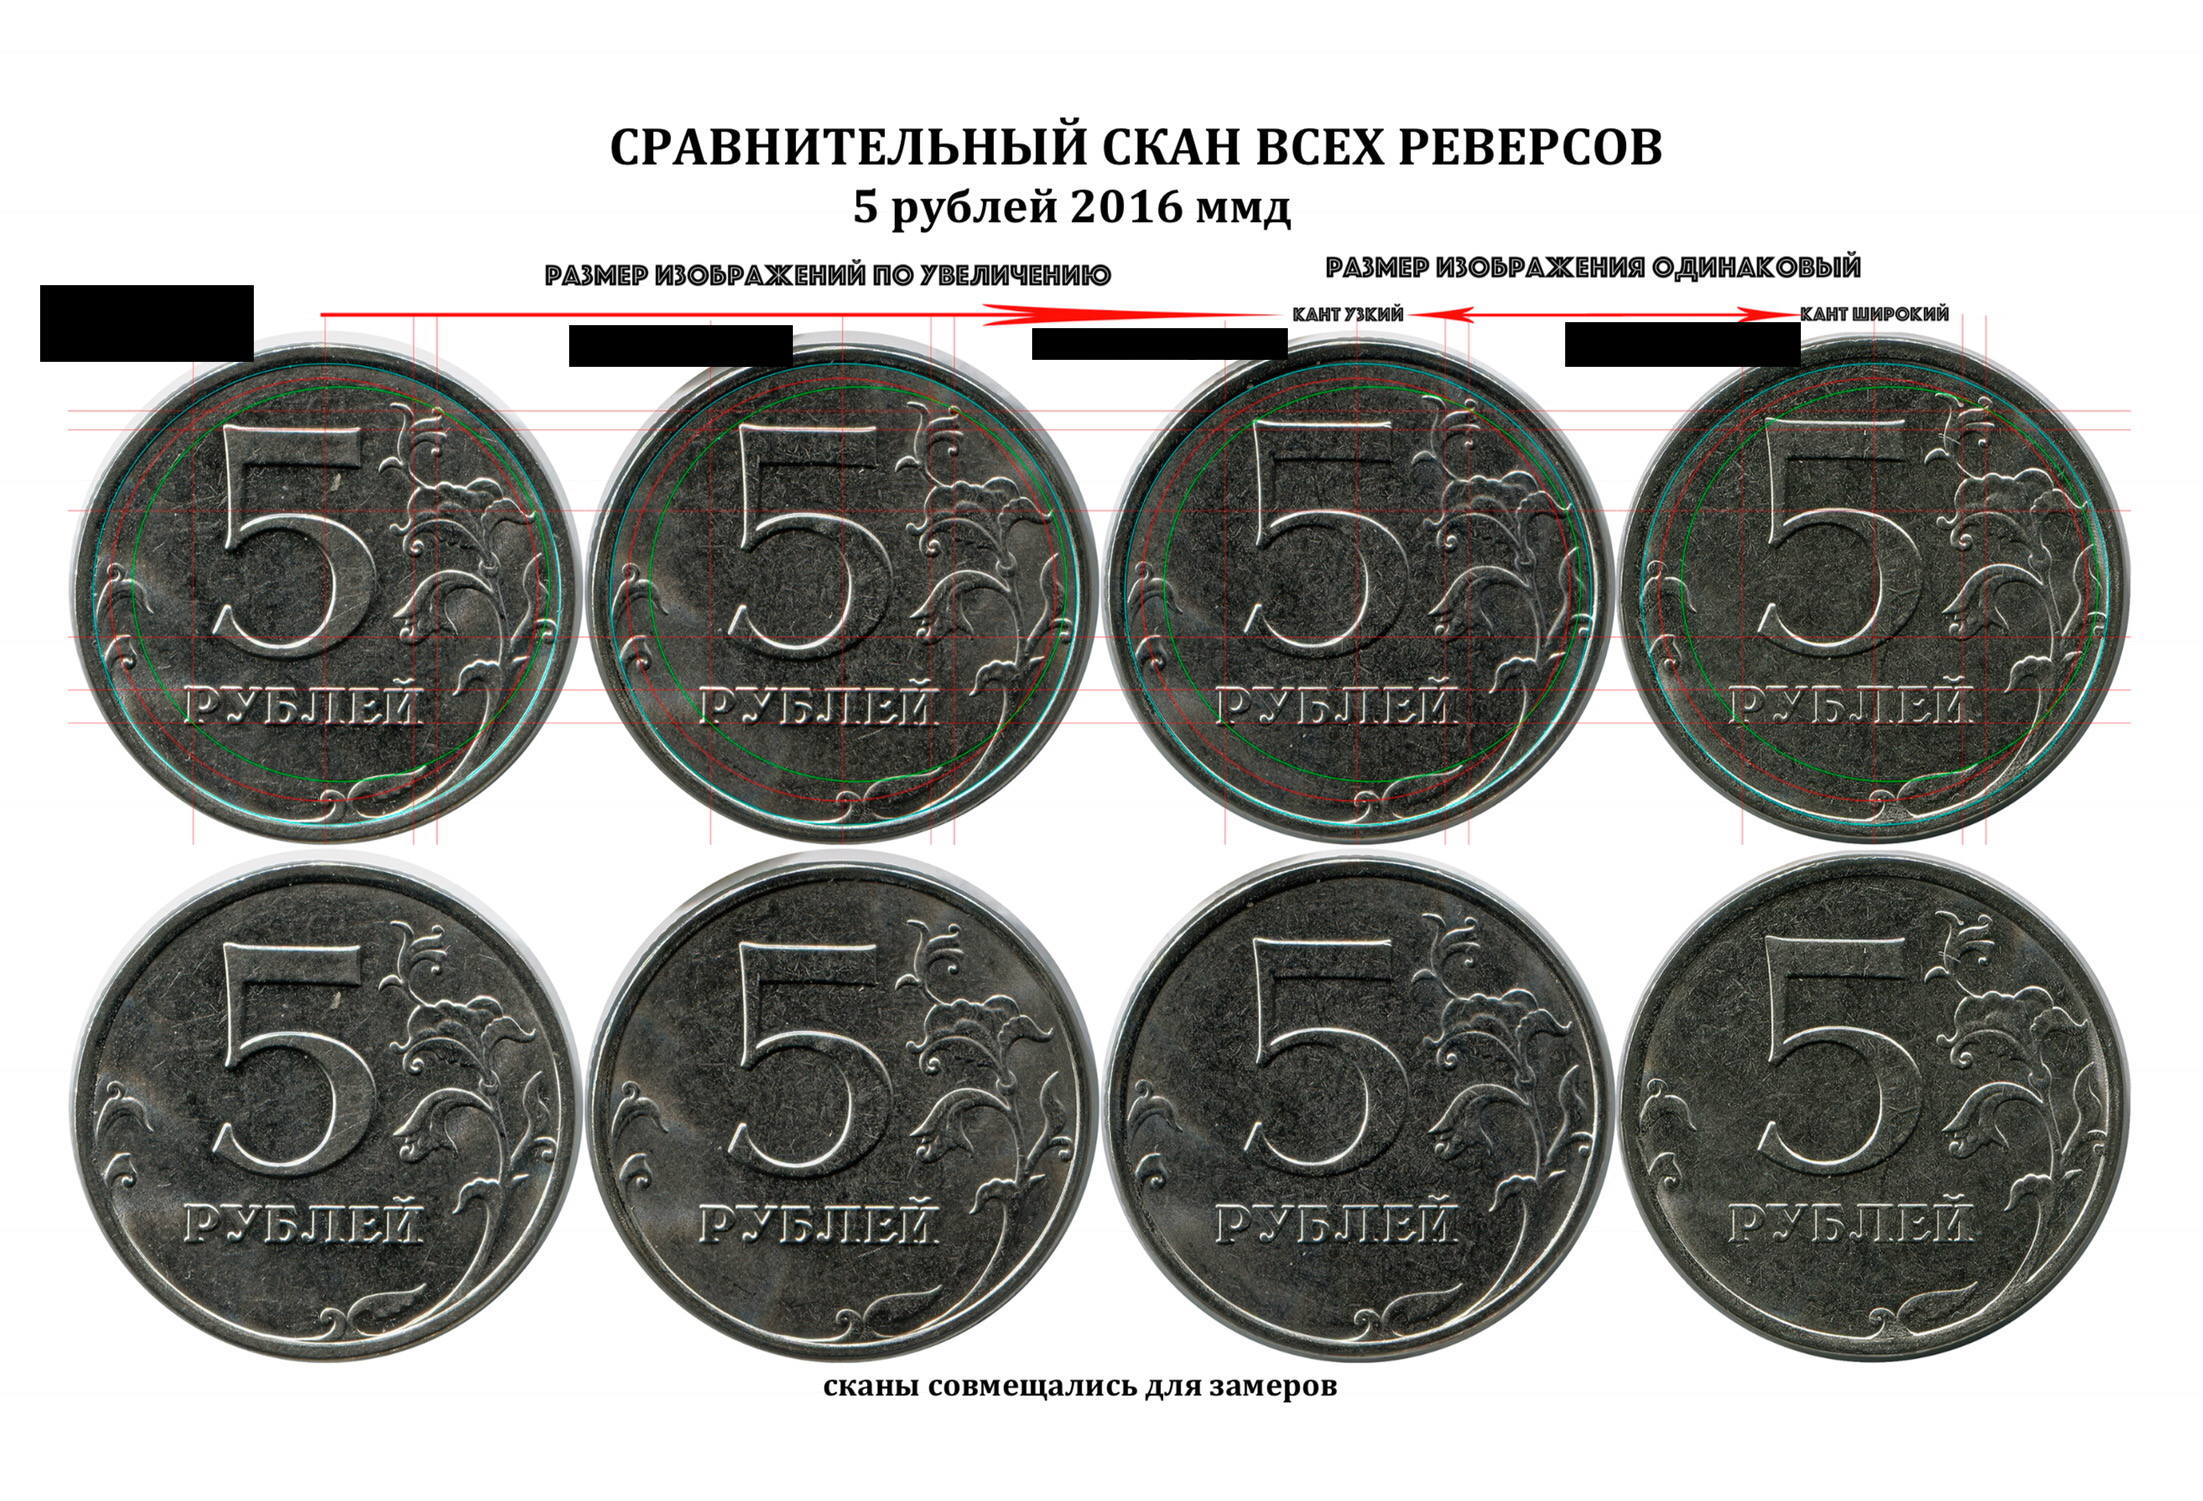 Цена 5 рублей со. Монета 5 рублей реверс. Рубль монета реверс. 5 Рублей диаметр монеты. Виды 5 рублевых монет.